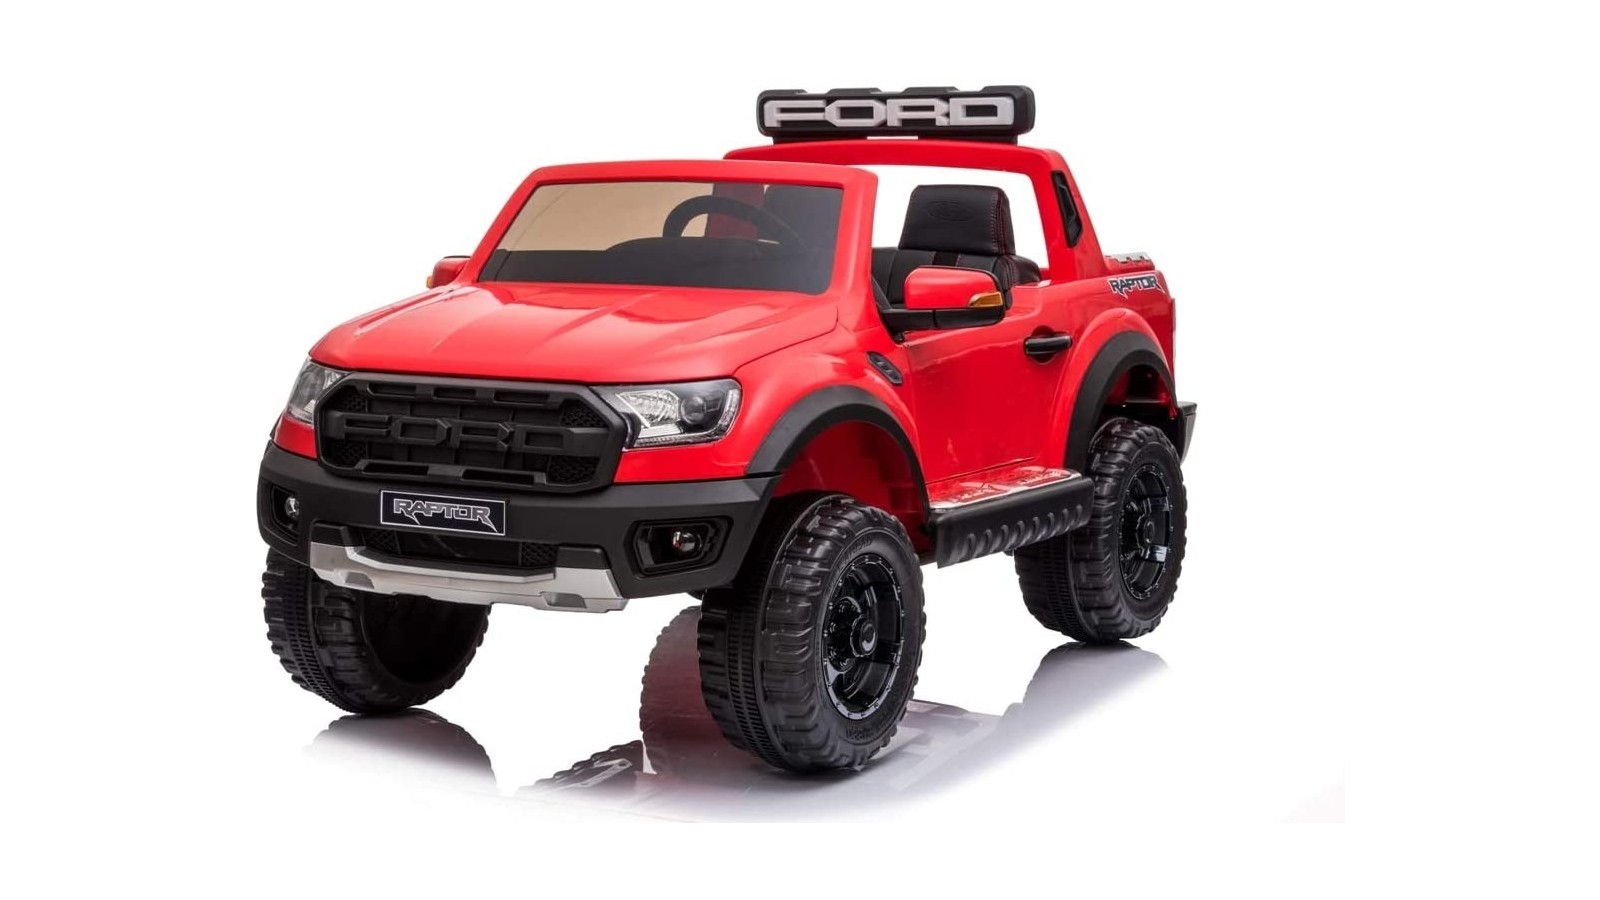 Auto Elettrica per Bambini 2 posti Ford Ranger Raptor Rossa 12 Volt Ruote in Gomma Sedile in Pelle porte apribili e telecomando